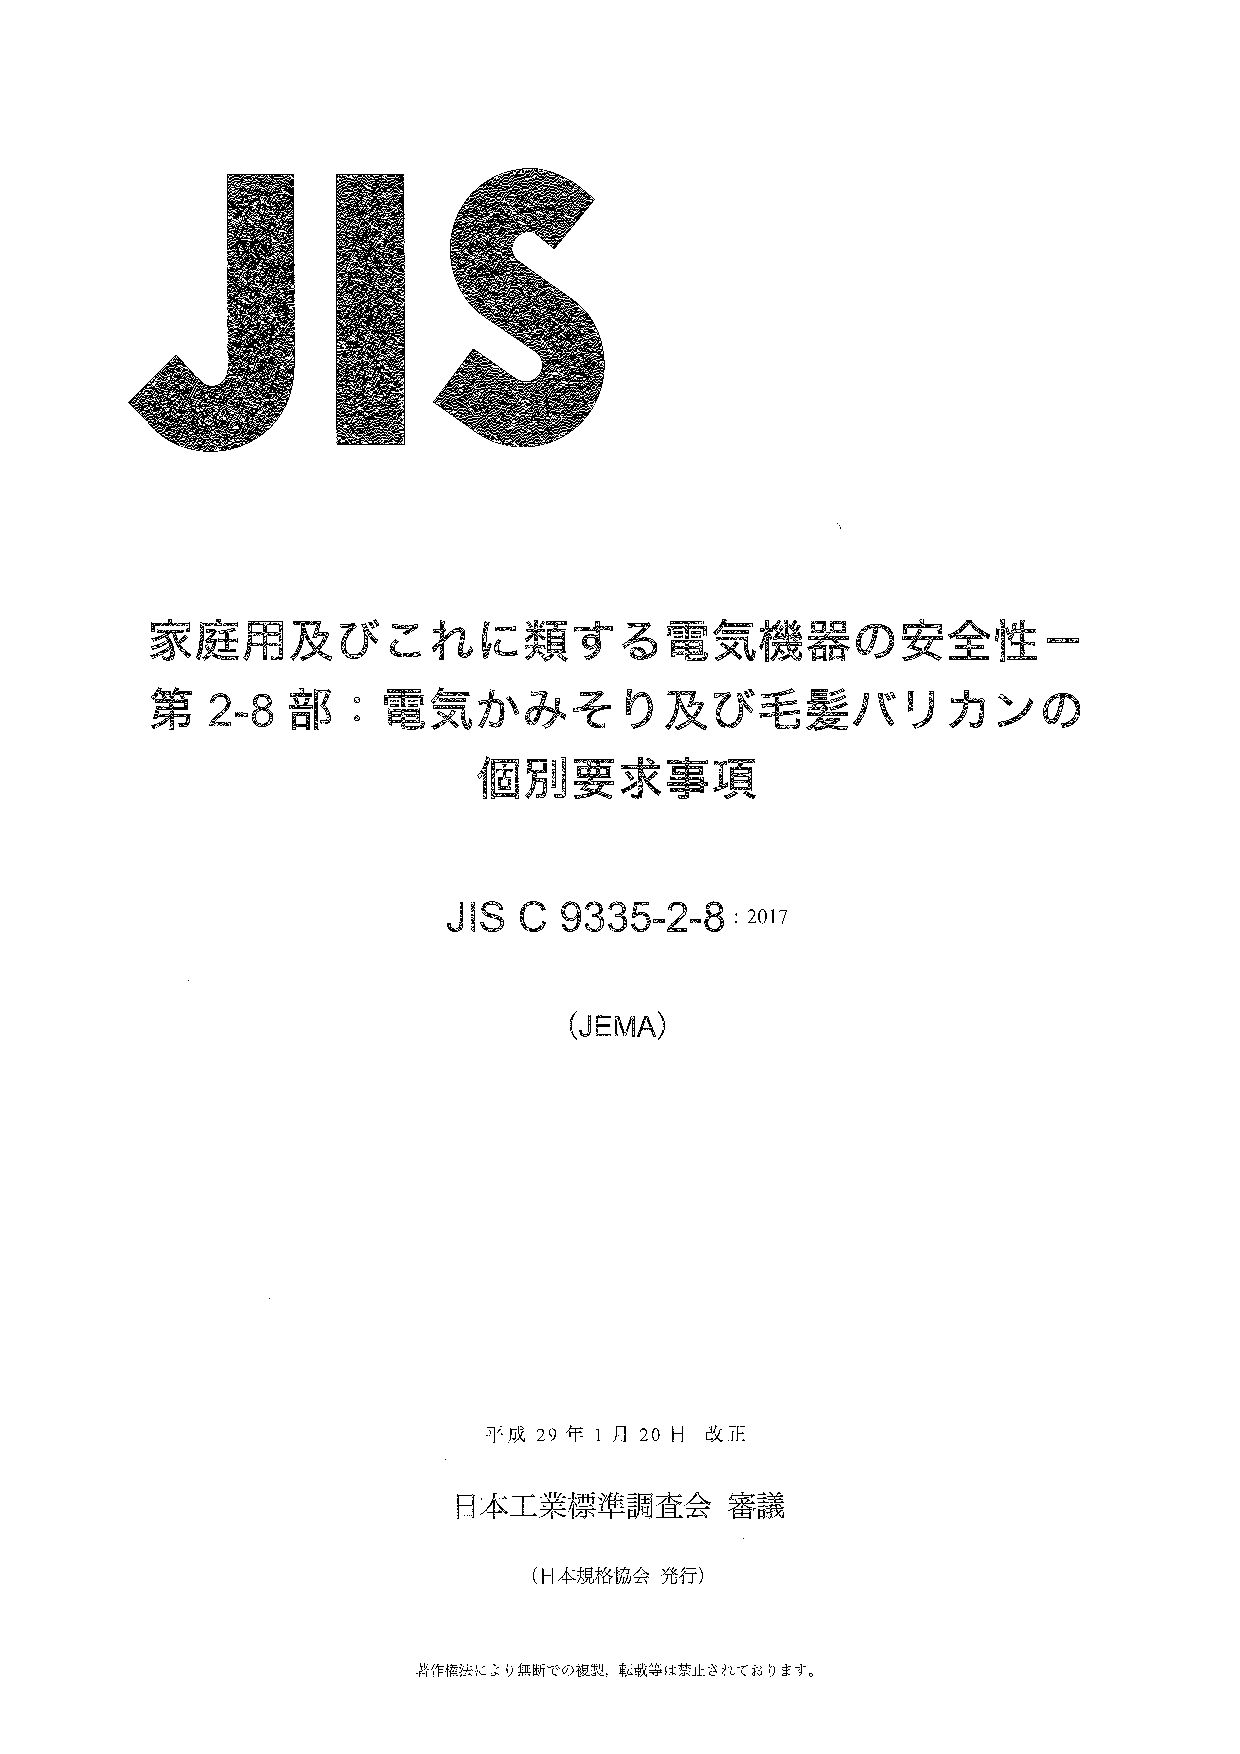 JIS C 9335-2-8:2017